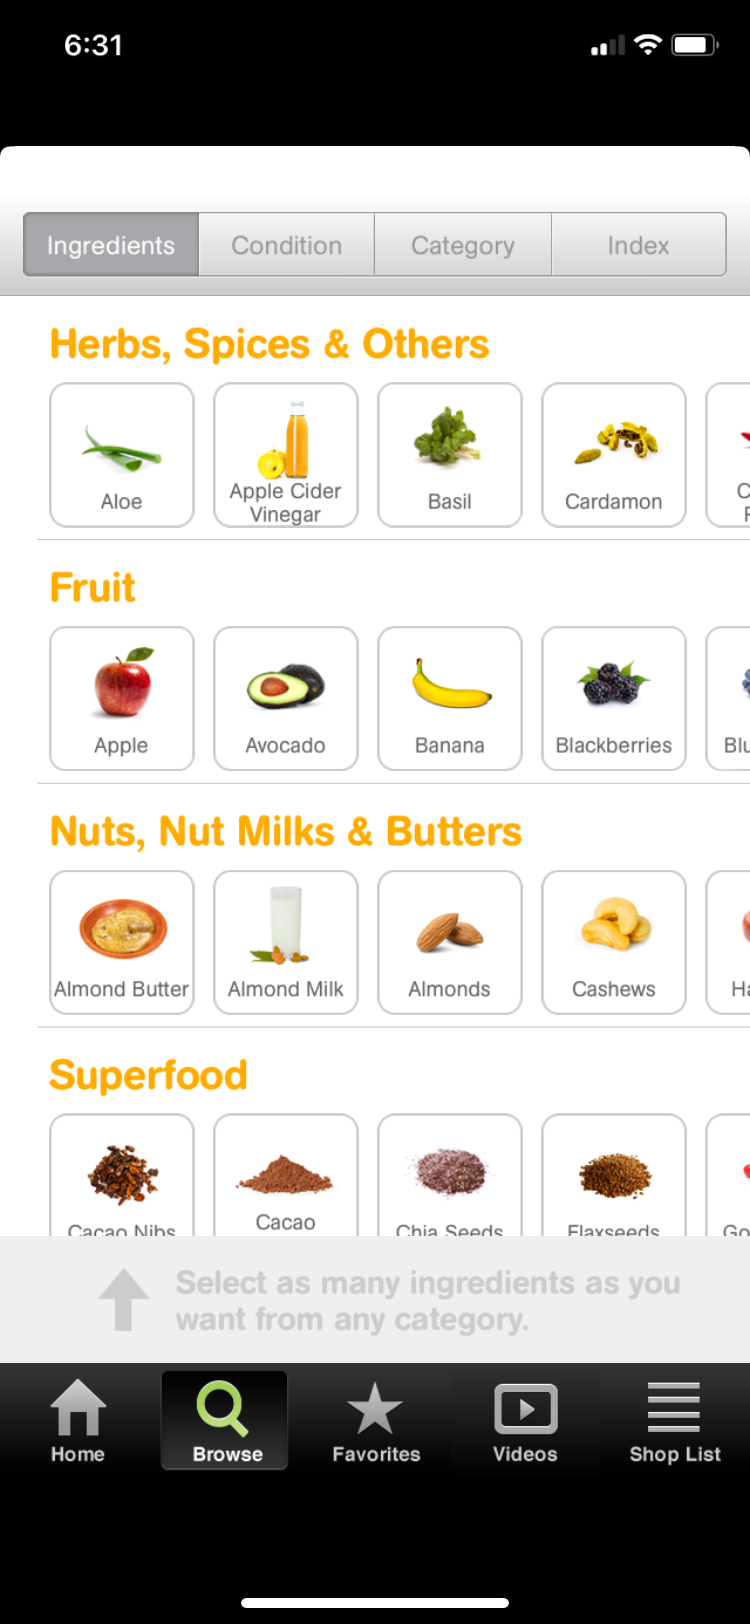 101 Smoothies app screenshot ingredients list